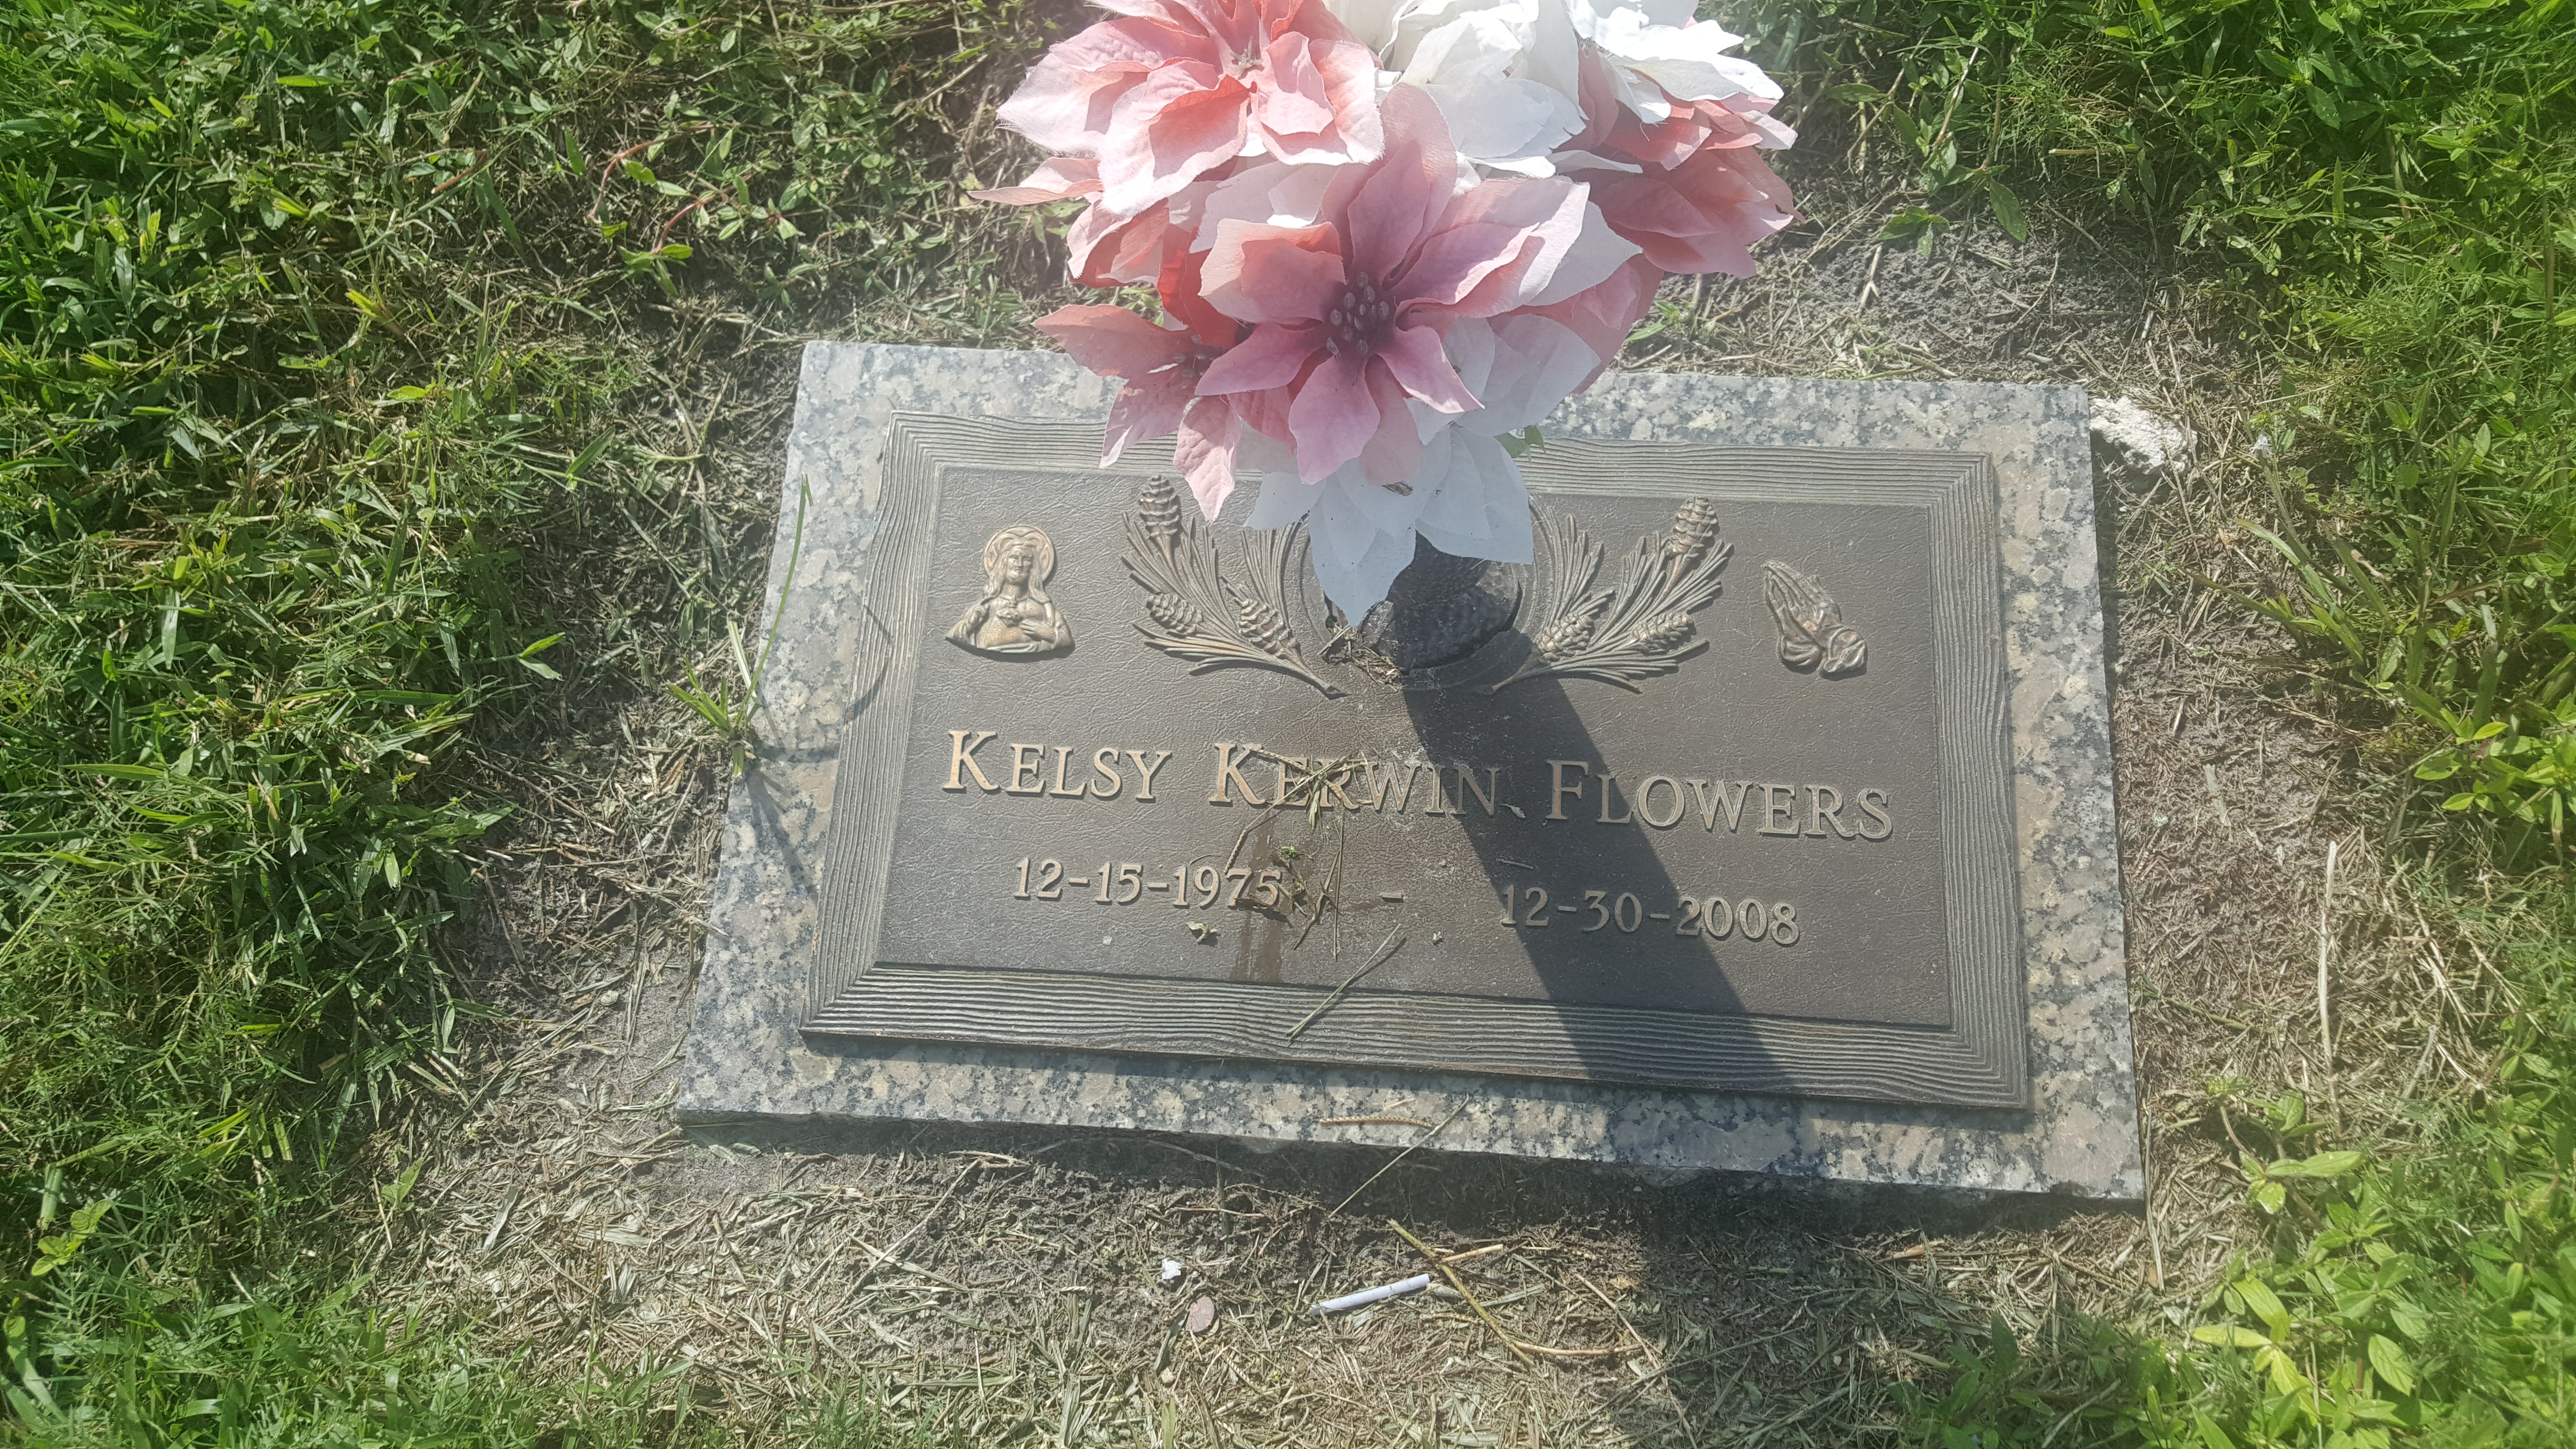 Kelsy Kerwin Flowers